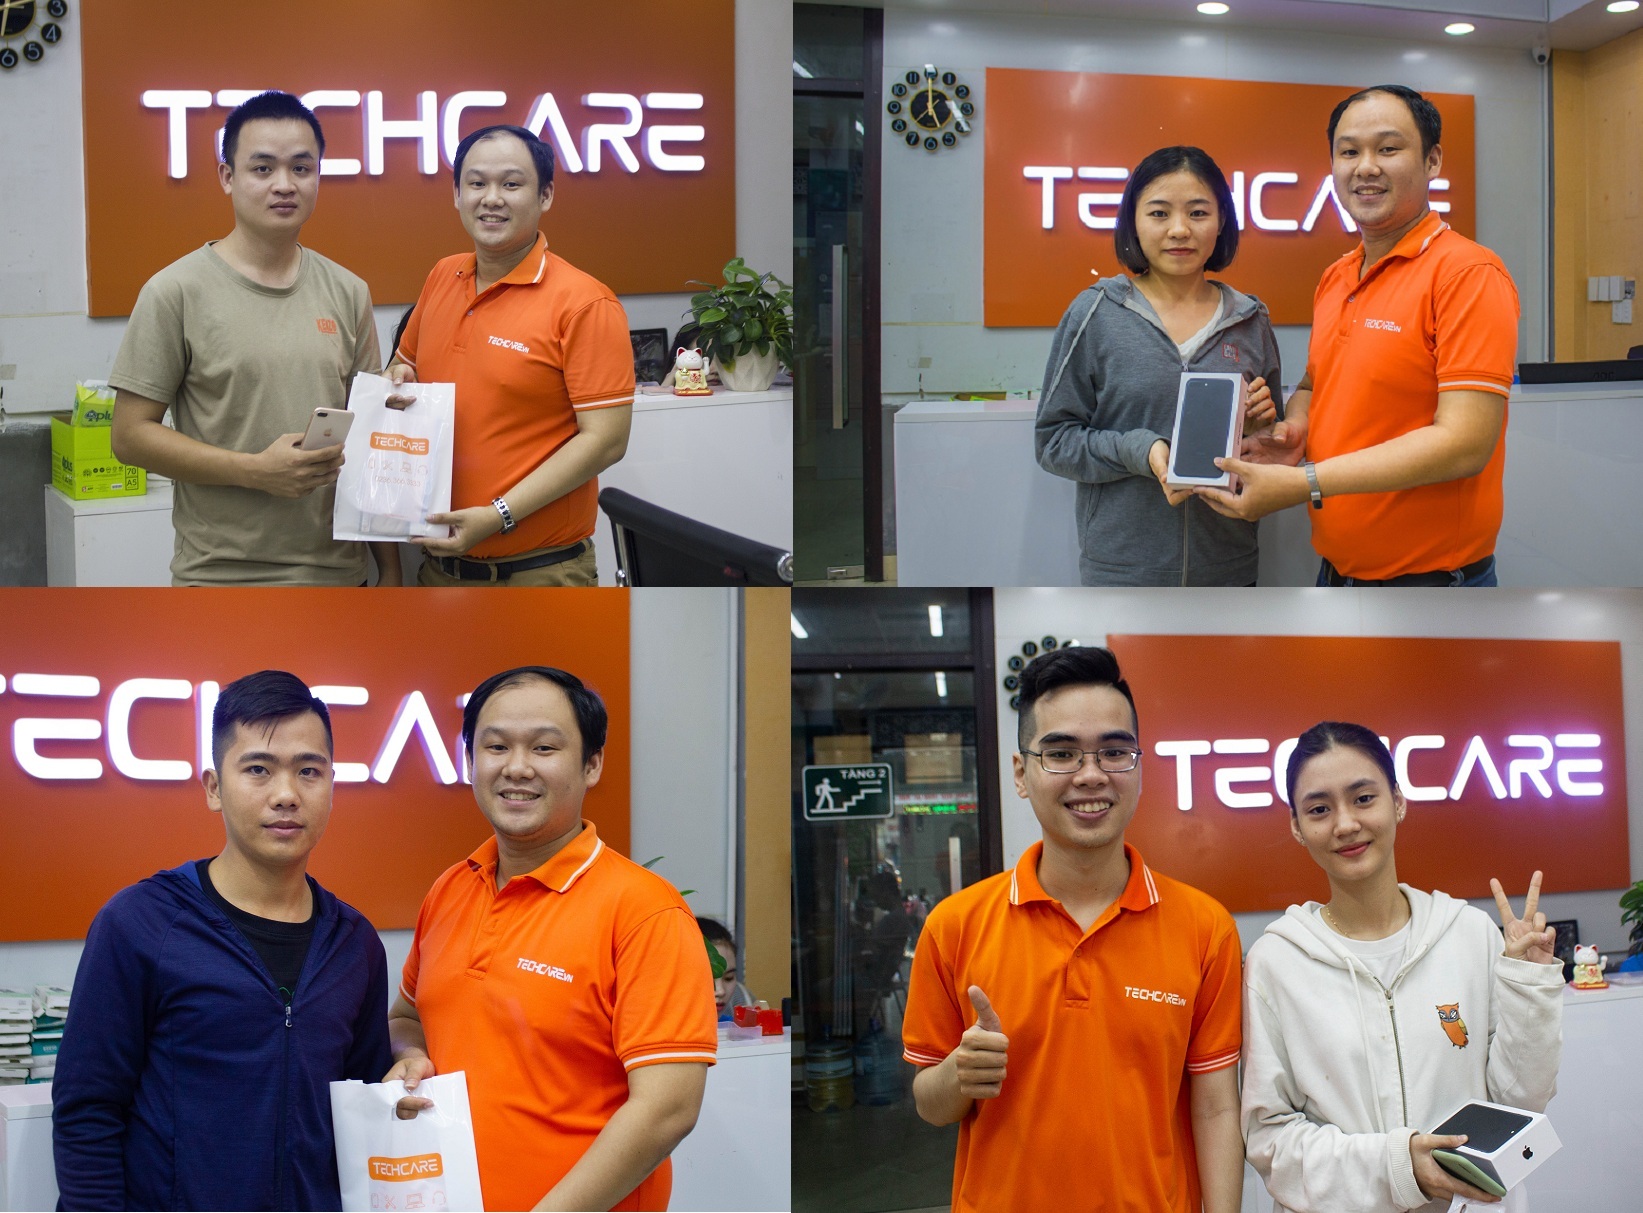 Bỏ túi Top 7 cửa hàng sửa chữa điện thoại Samsung tại Đà Nẵng tốt nhất